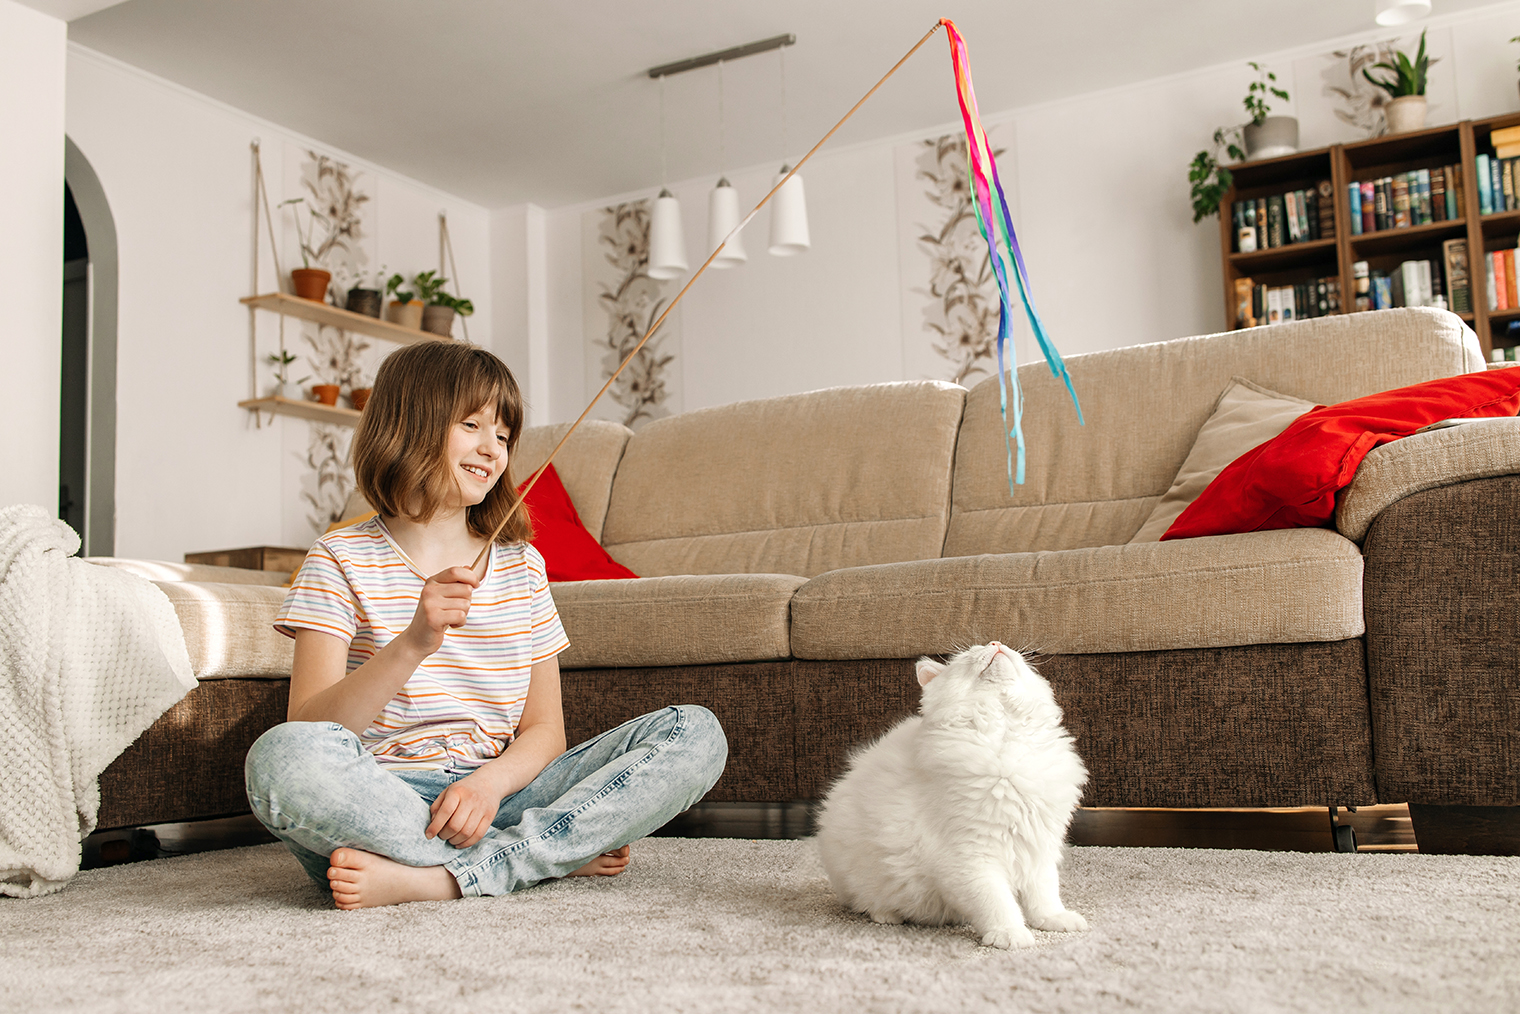 Игрушки-дразнилки помогают сохранять дистанцию между ребенком и кошкой во время игры. Фотография: Elena Medoks / Shutterstock / FOTODOM